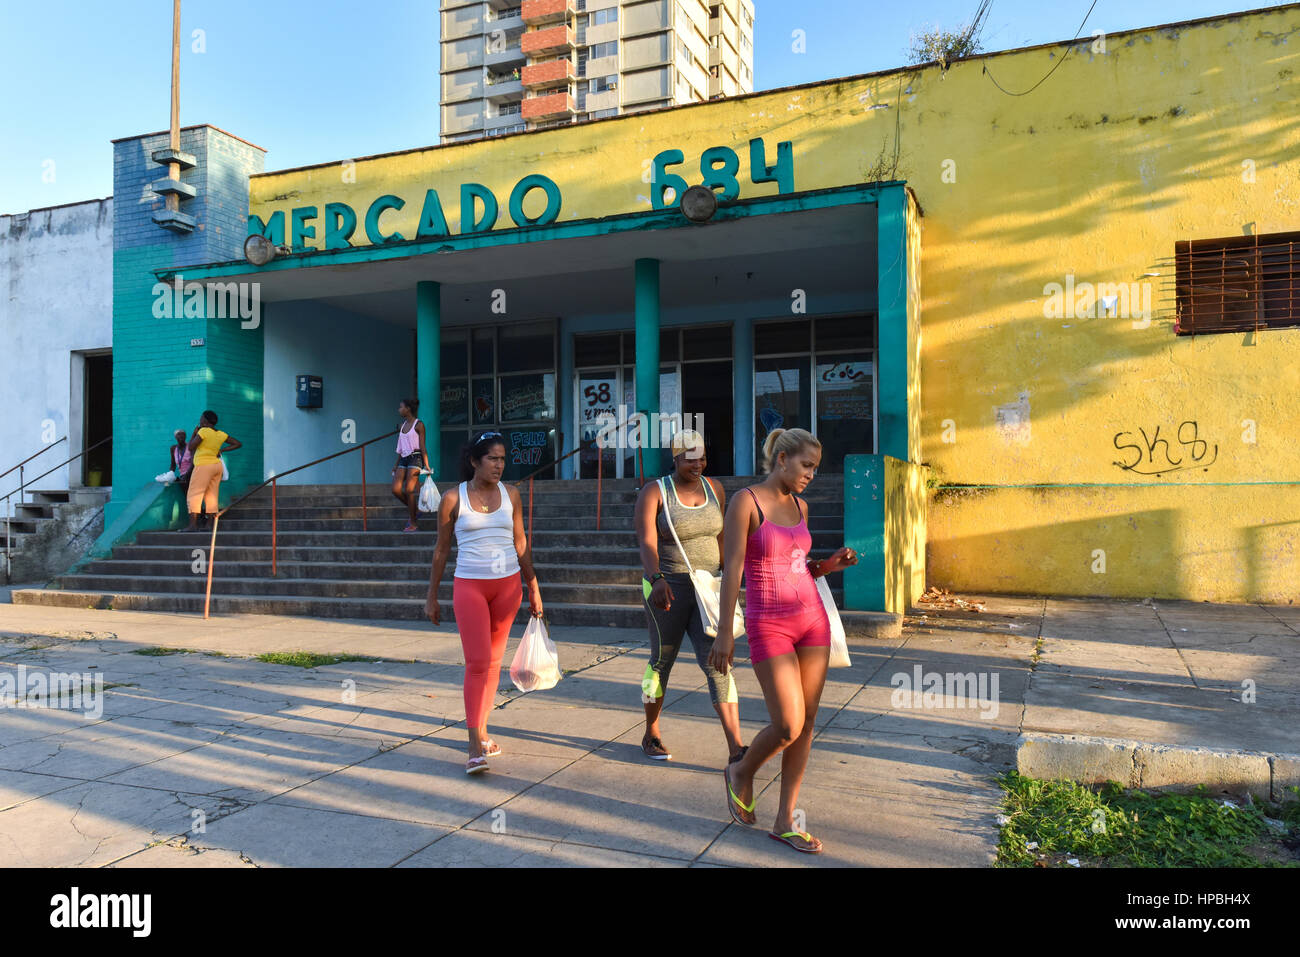 Onorevoli camminando accanto al Mercado,Vedado Havana Foto Stock